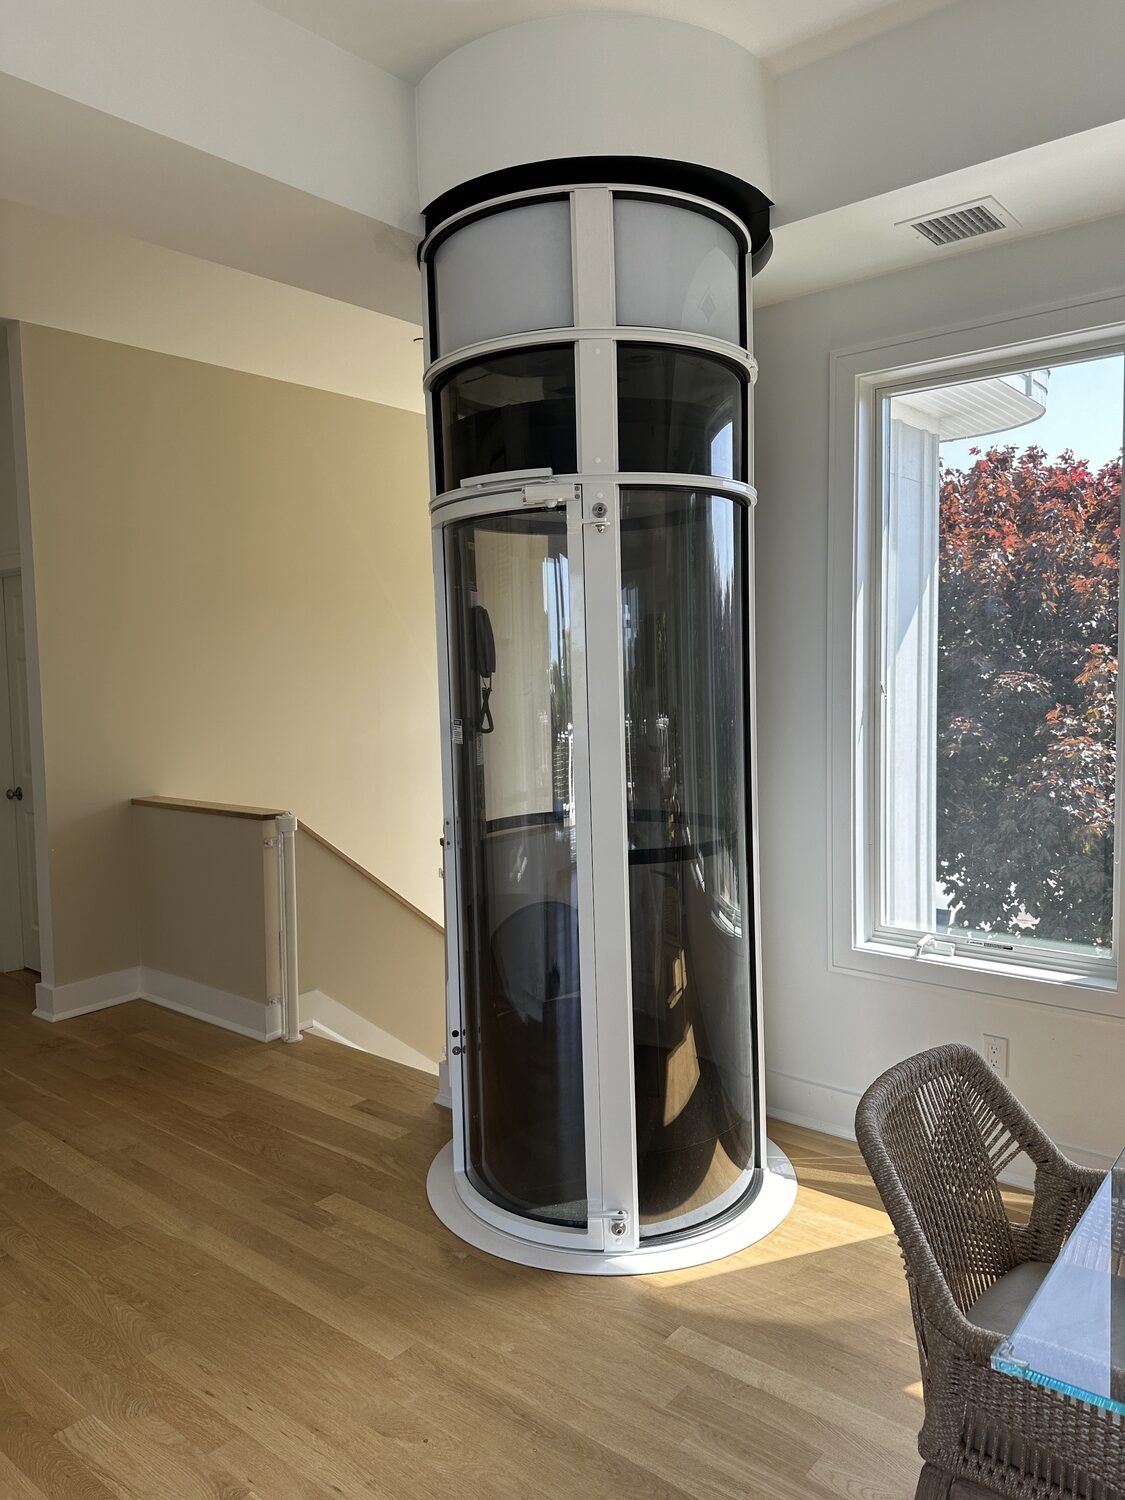 A pneumatic elevator in a home in Westhampton. DAN STARK